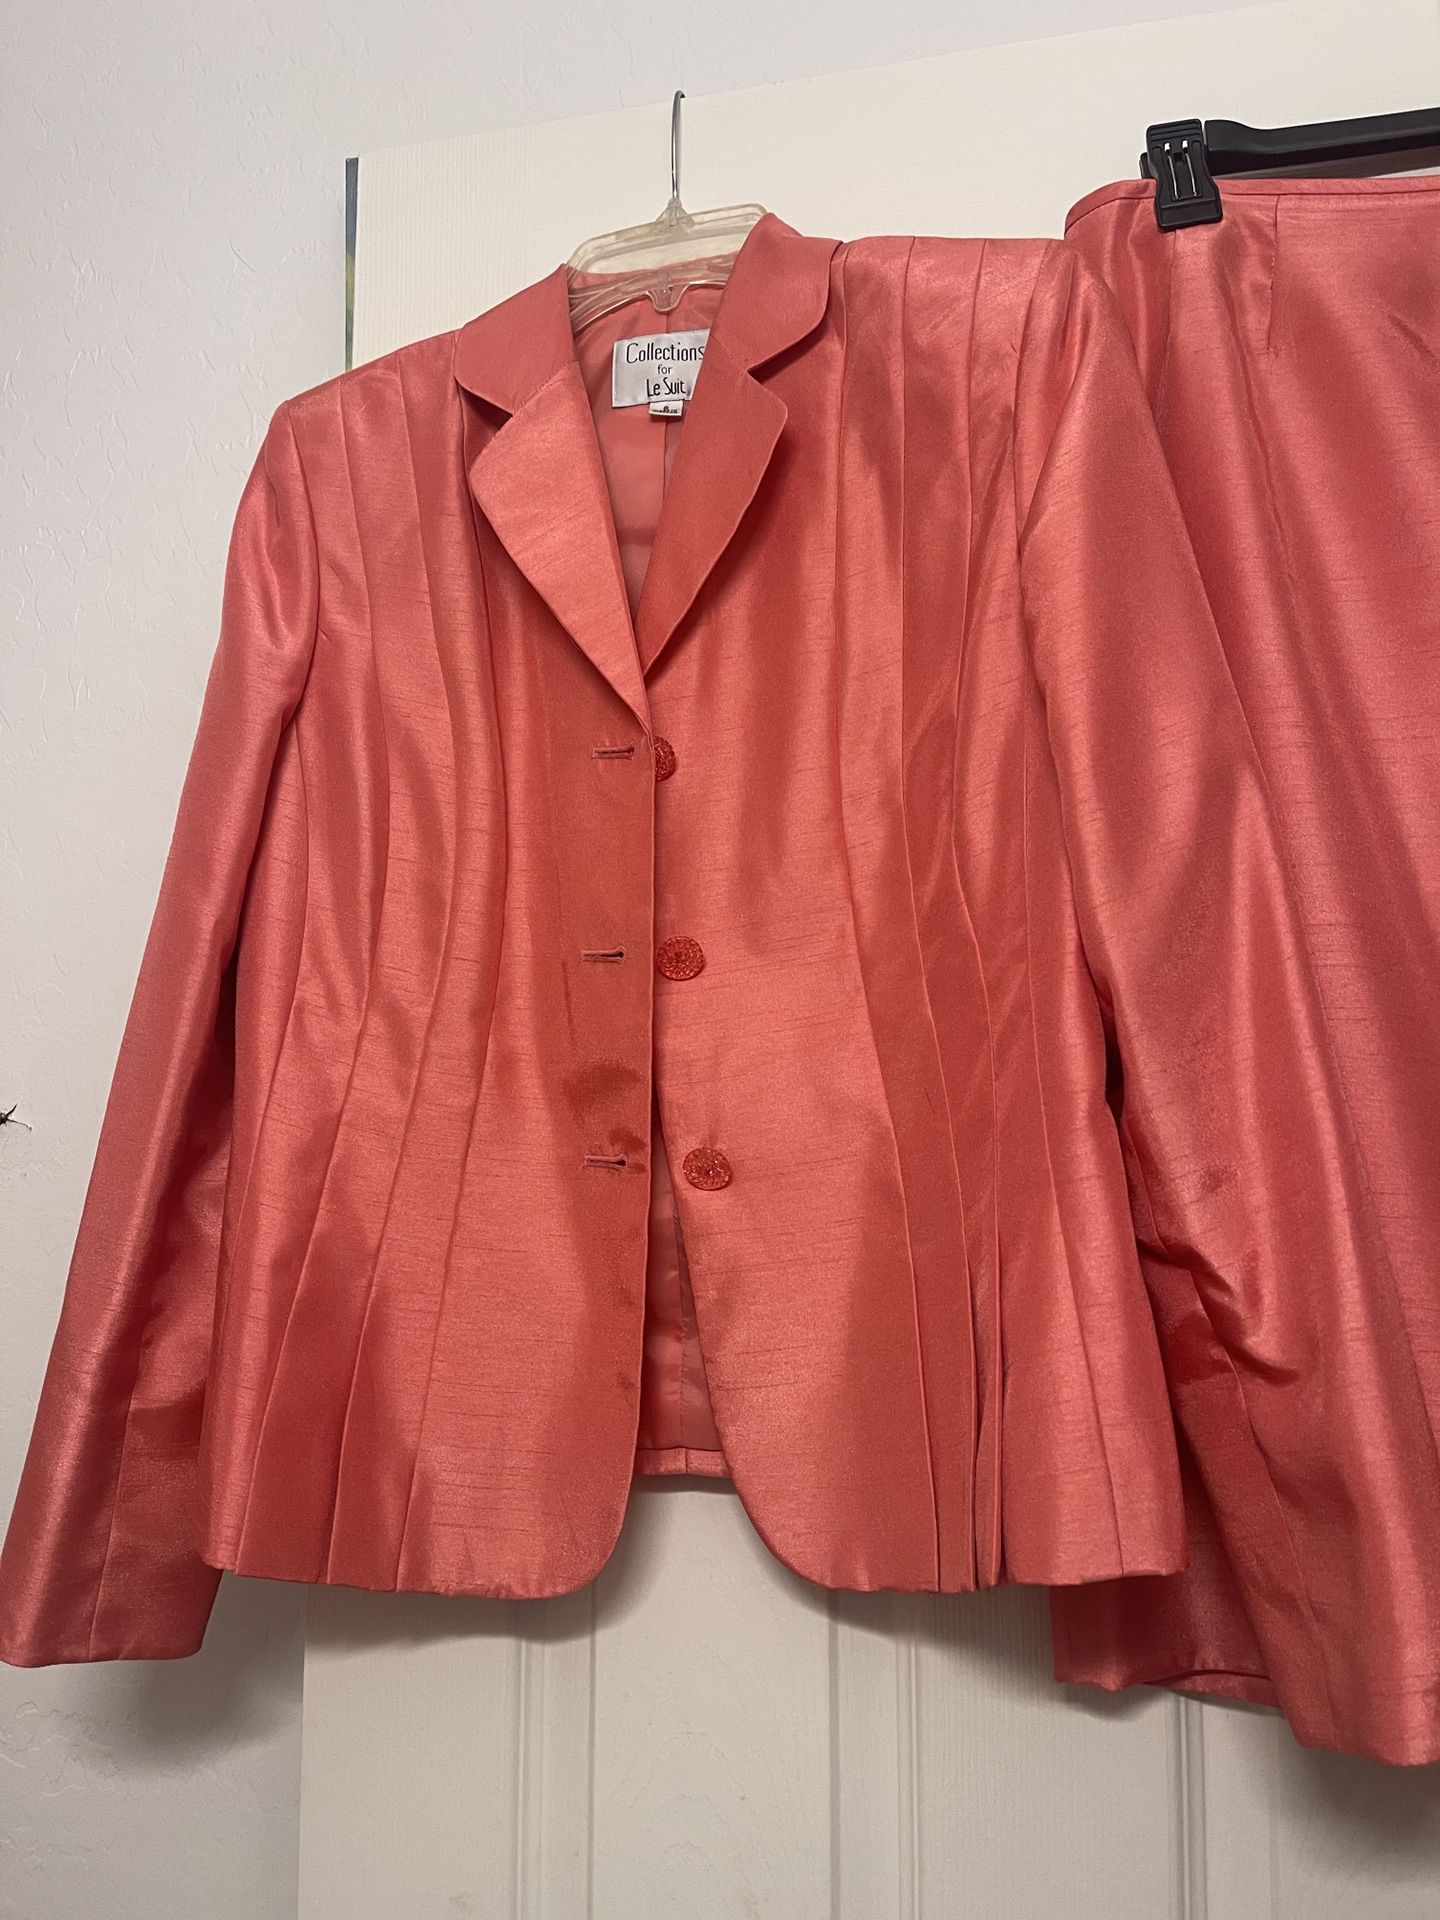 Apricot Silk Suit Size 8